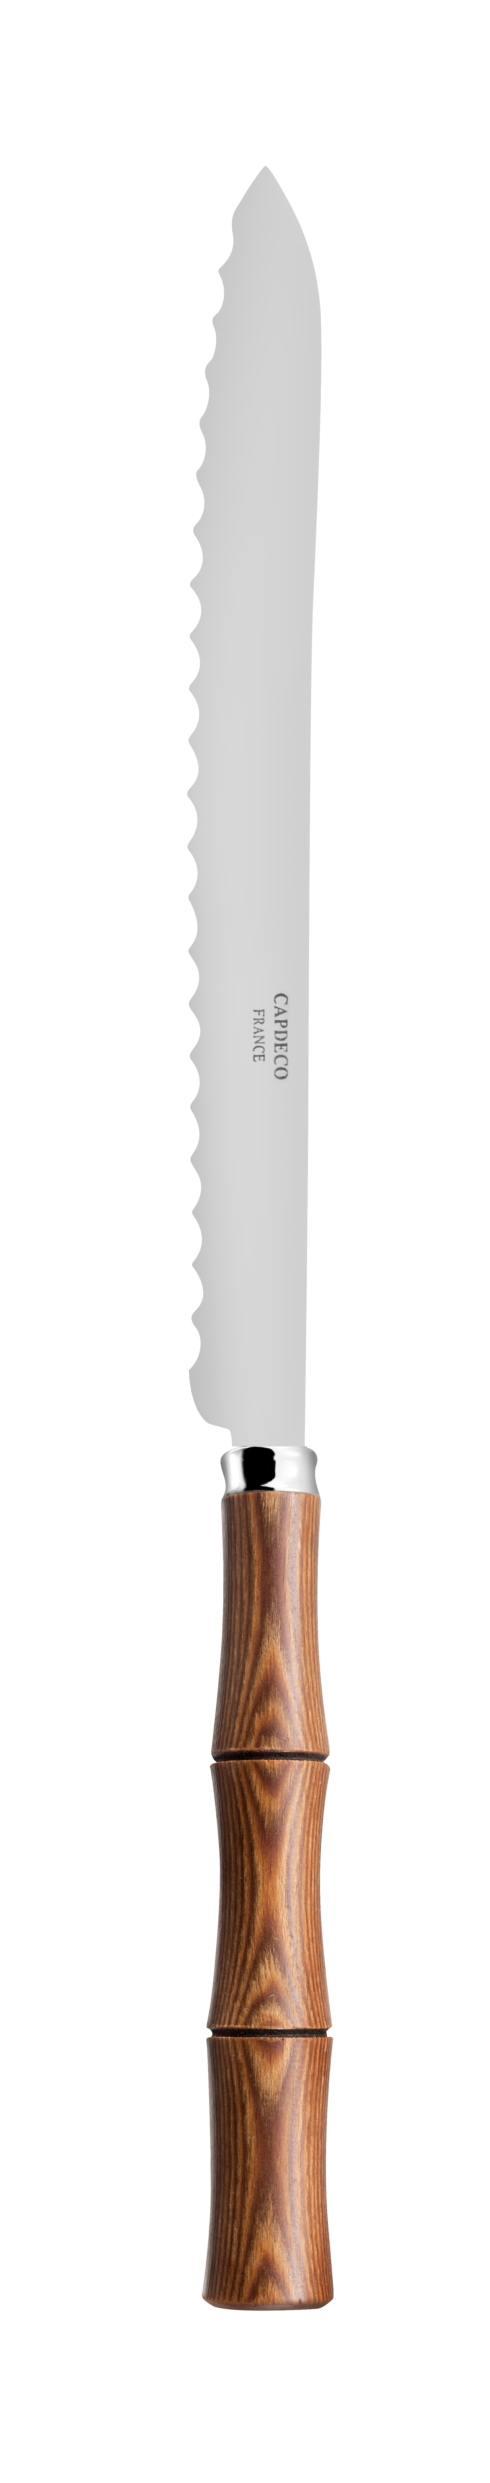 $102.00 Bread knife